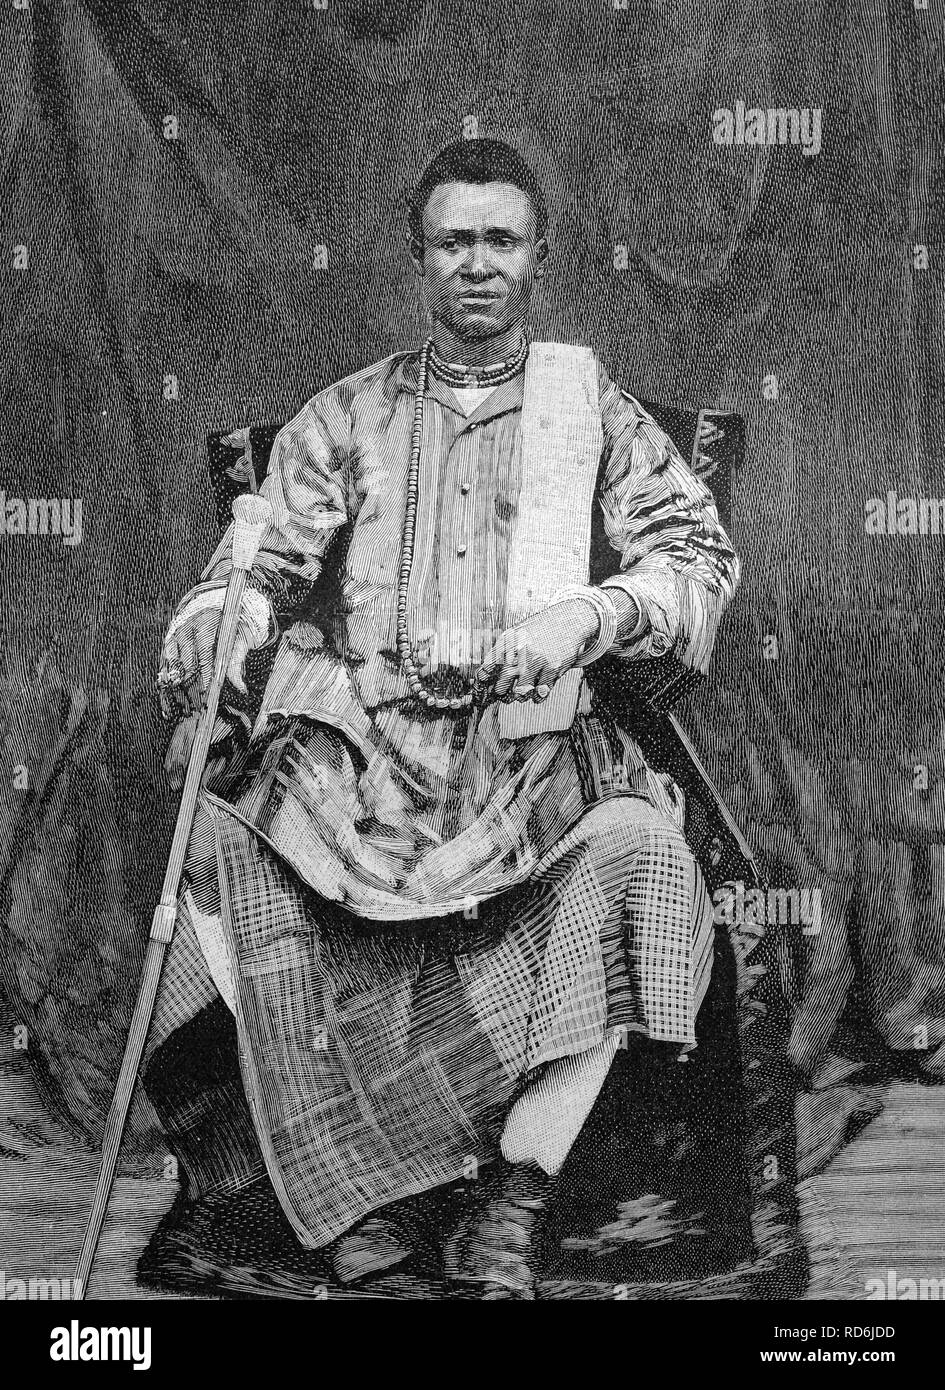 Béhanzin, König von Königreich von Dahomey, Afrika, historische Abbildung ca. 1893 Stockfoto